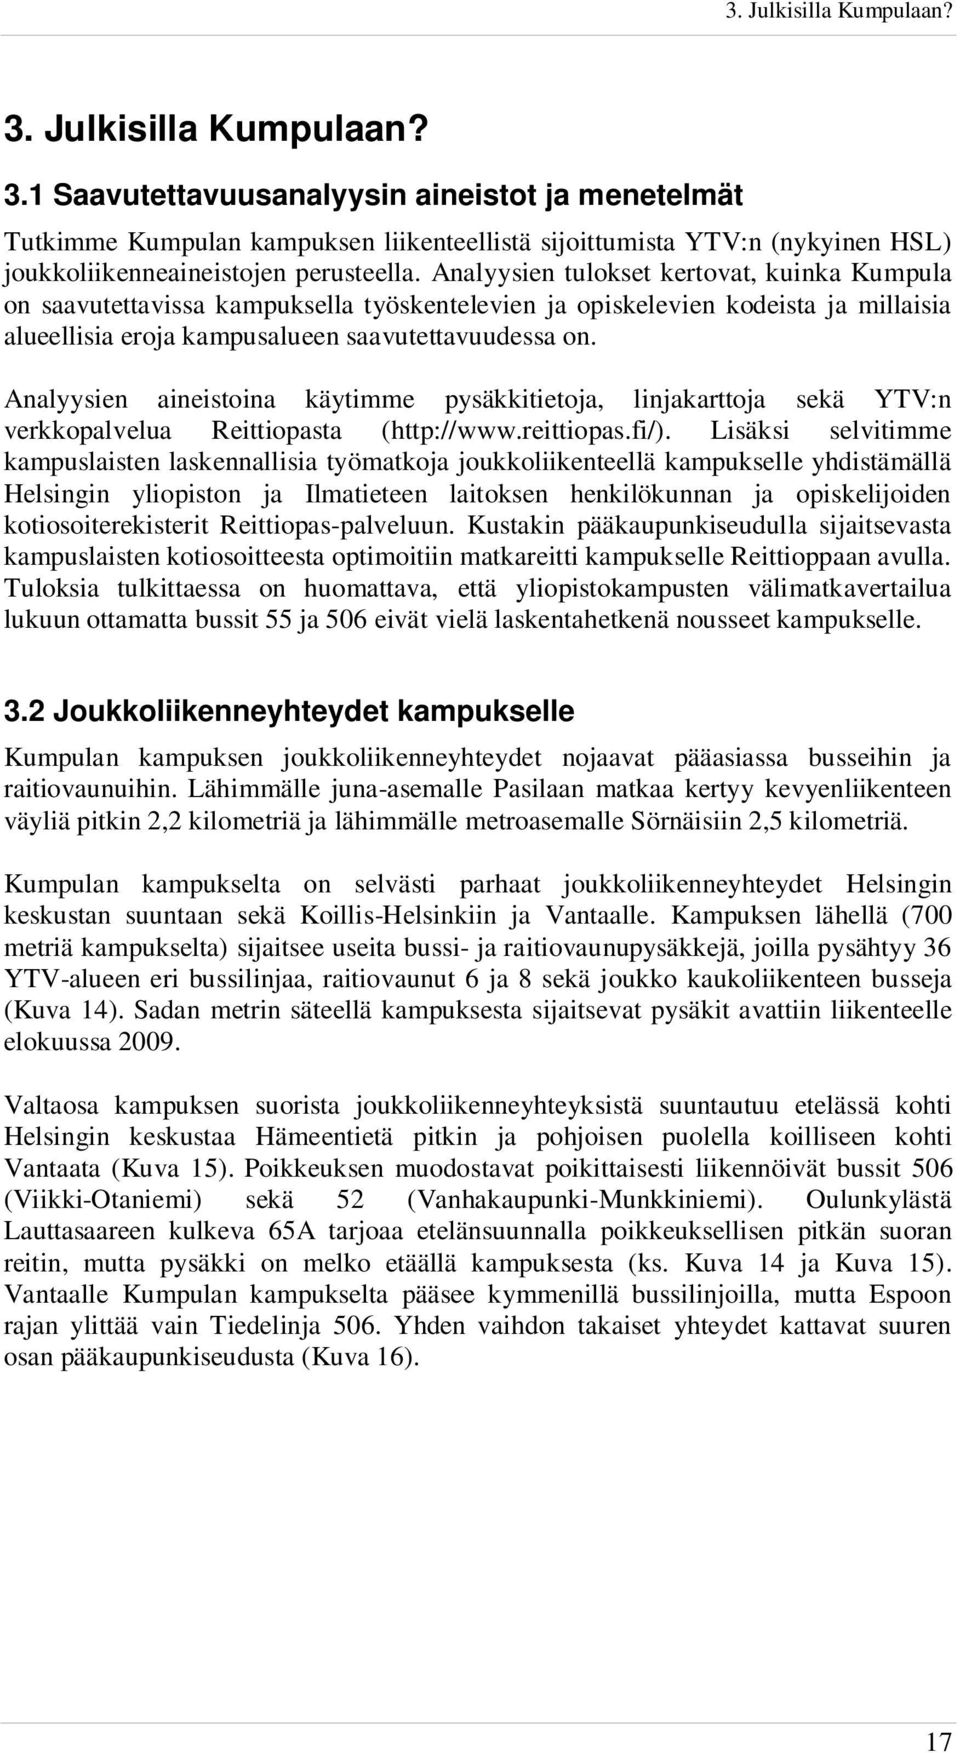 Analyysien aineistoina käytimme pysäkkitietoja, linjakarttoja sekä YTV:n verkkopalvelua Reittiopasta (http://www.reittiopas.fi/).